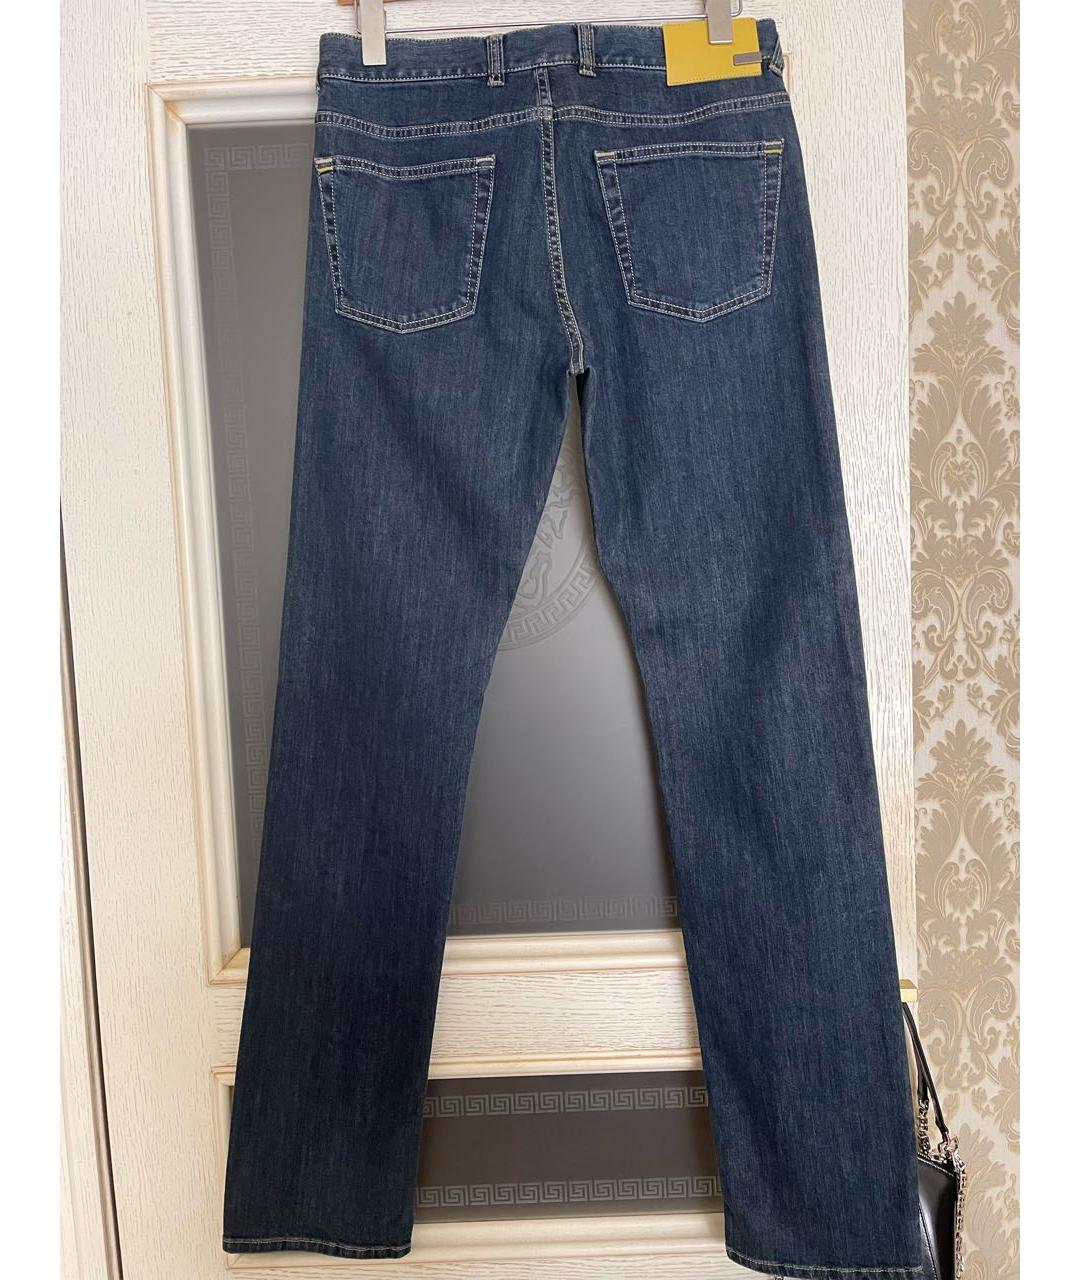 CANALI Синие хлопковые прямые джинсы, фото 2